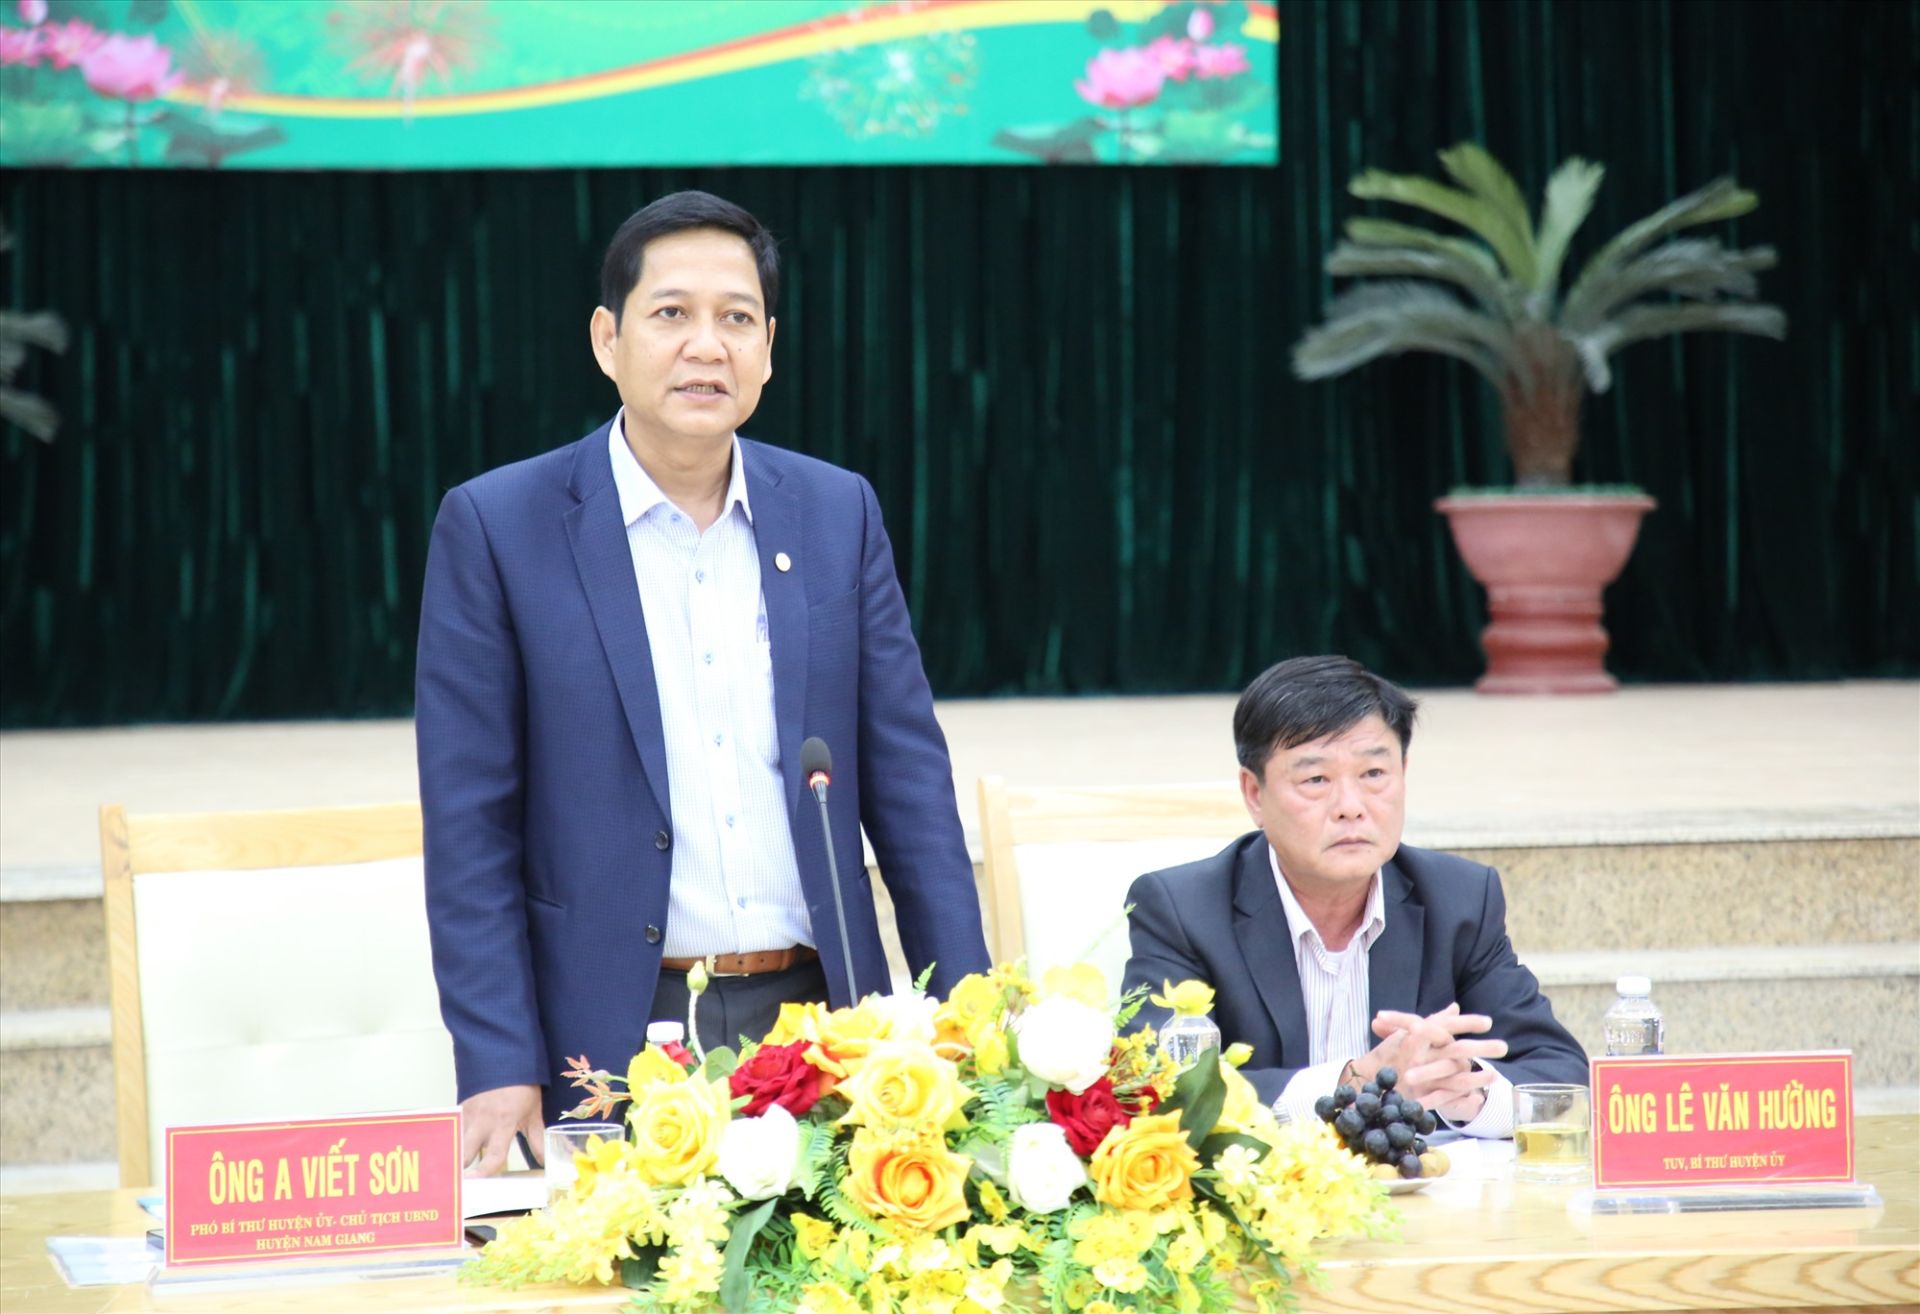 Ông A Viết Sơn – Chủ tịch UBND huyện Nam Giang